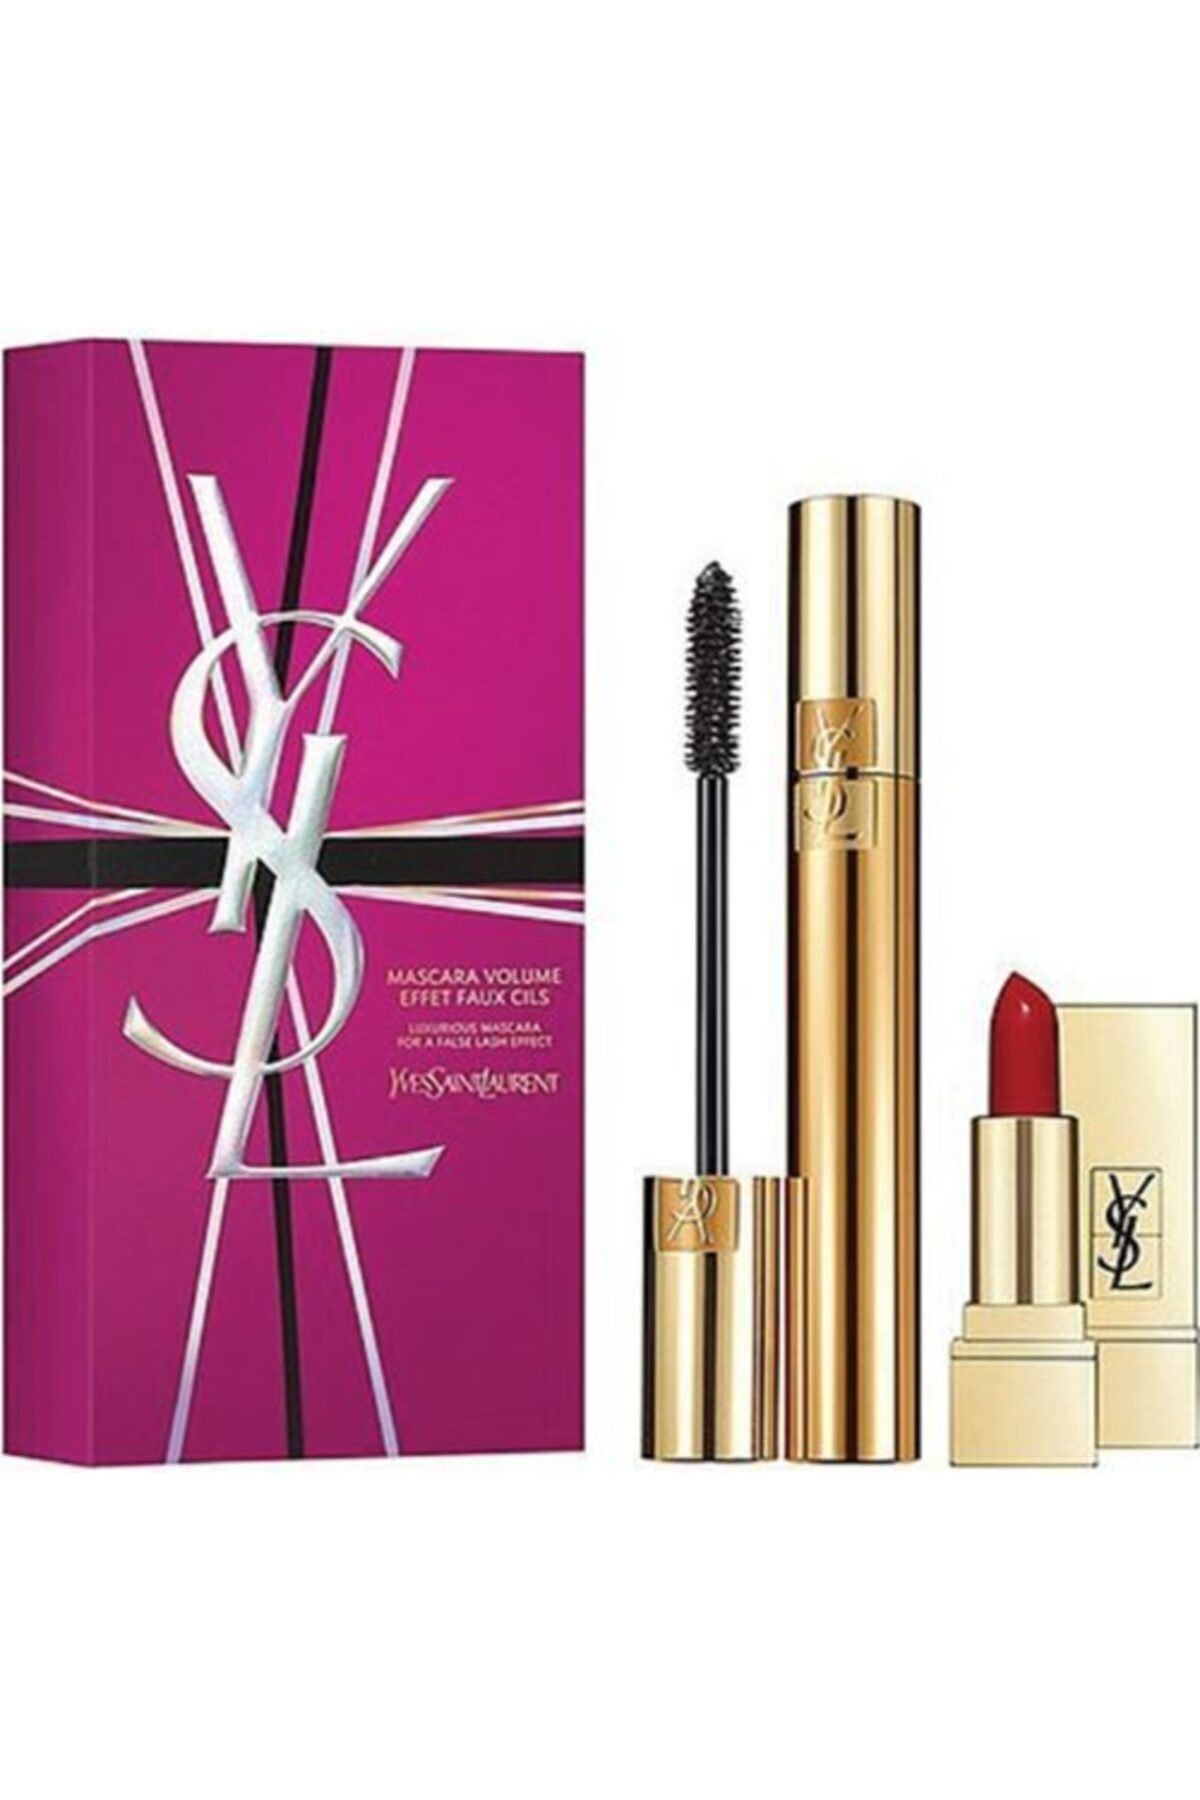 Yves Saint Laurent Volume Effet Faux Cils Mascara & Mini Rouge Pure Couture 01 Set